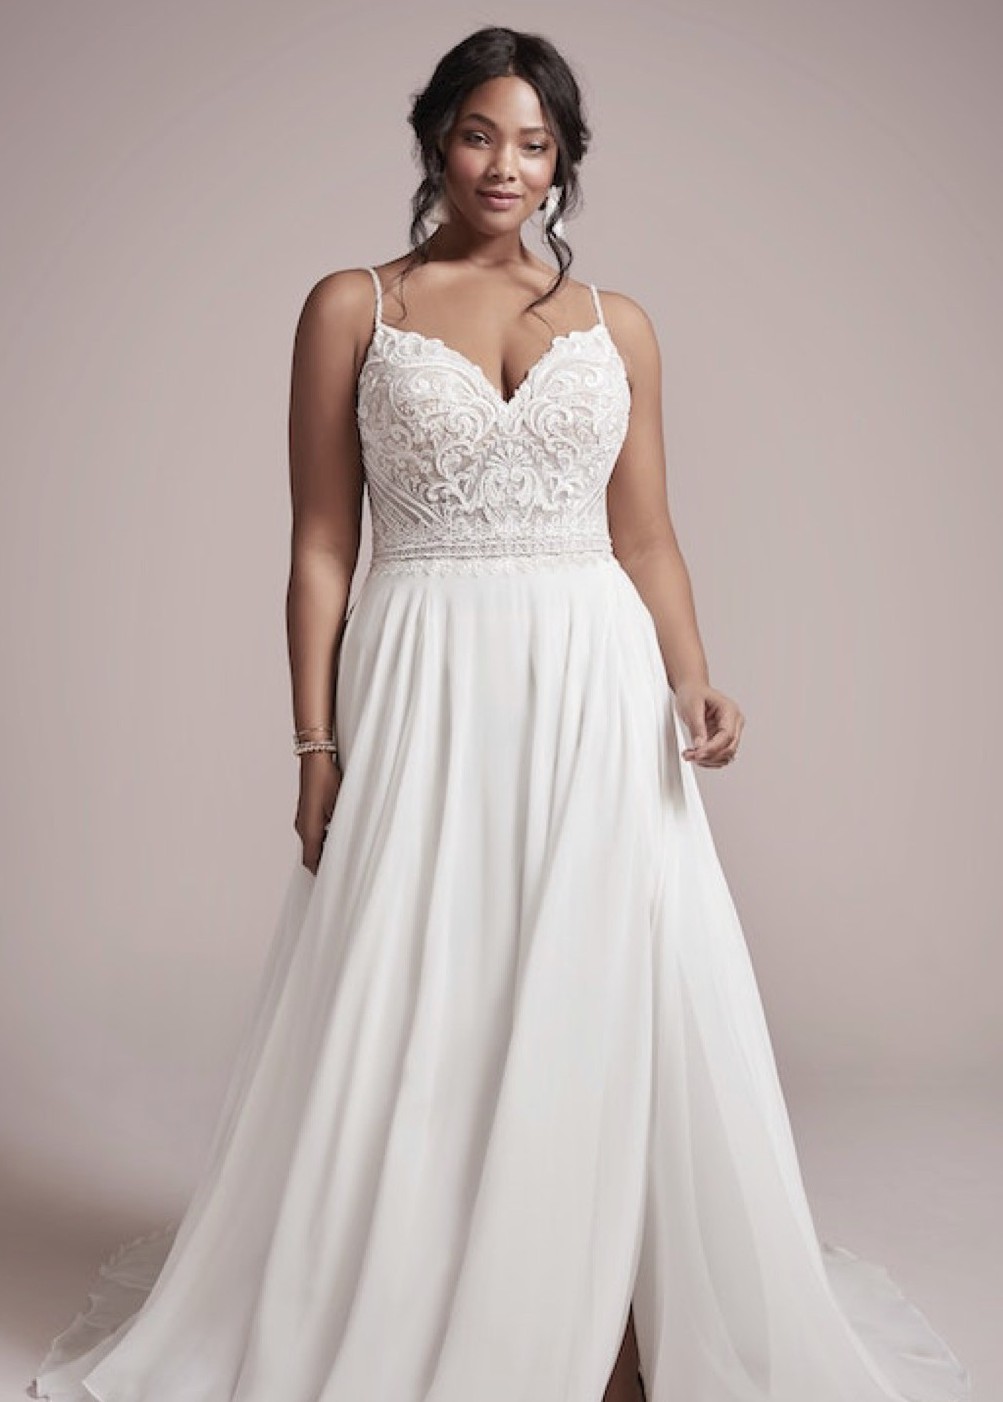 Maggie Sottero Lorraine New Wedding Dress Save 40% - Stillwhite